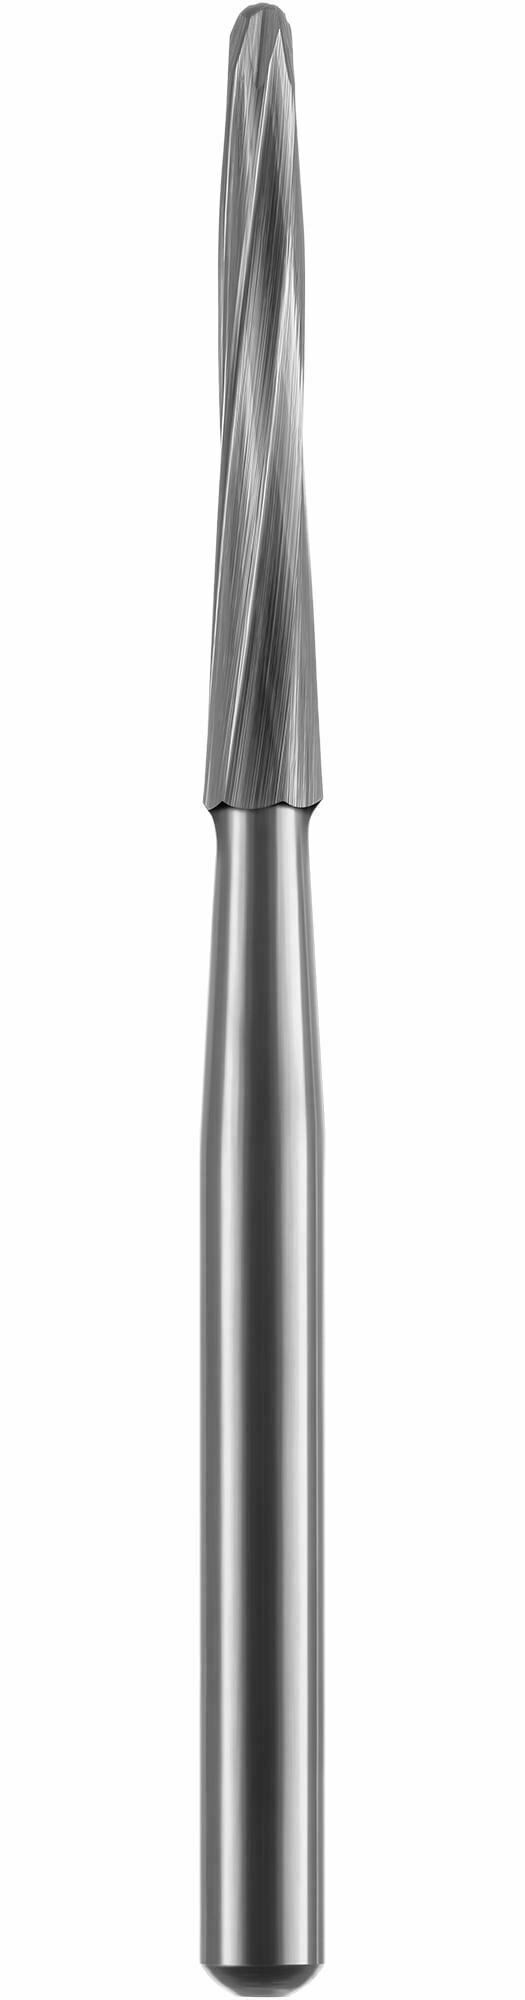 Sebészi karbid foghúzáshoz, lándzsa alakú vékony, 25 mm, 10 mm működő véggel, FG, 16-os átmérő